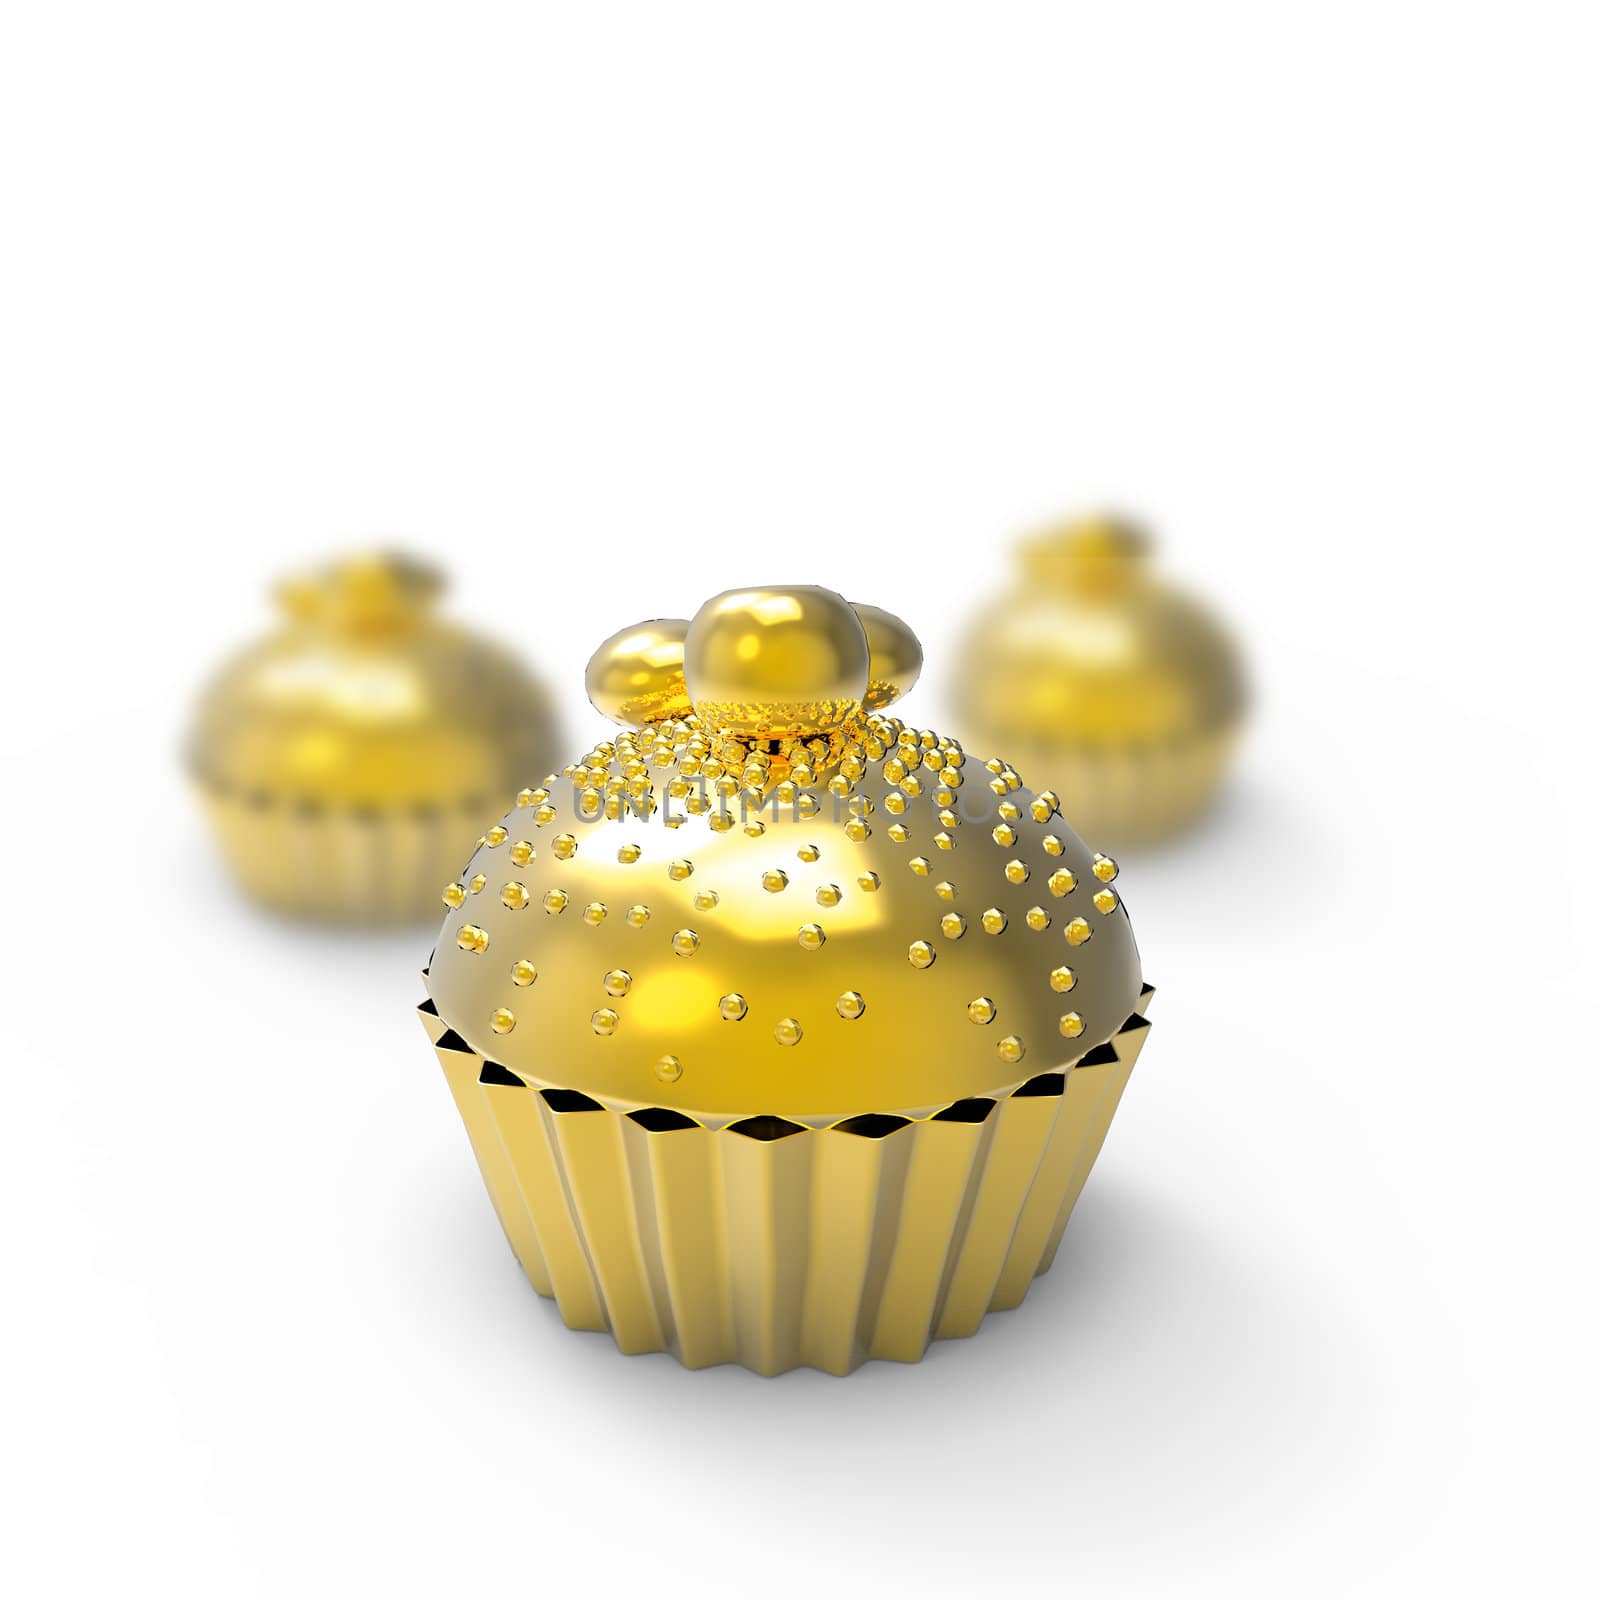 golden cupcake 3d rendering on white